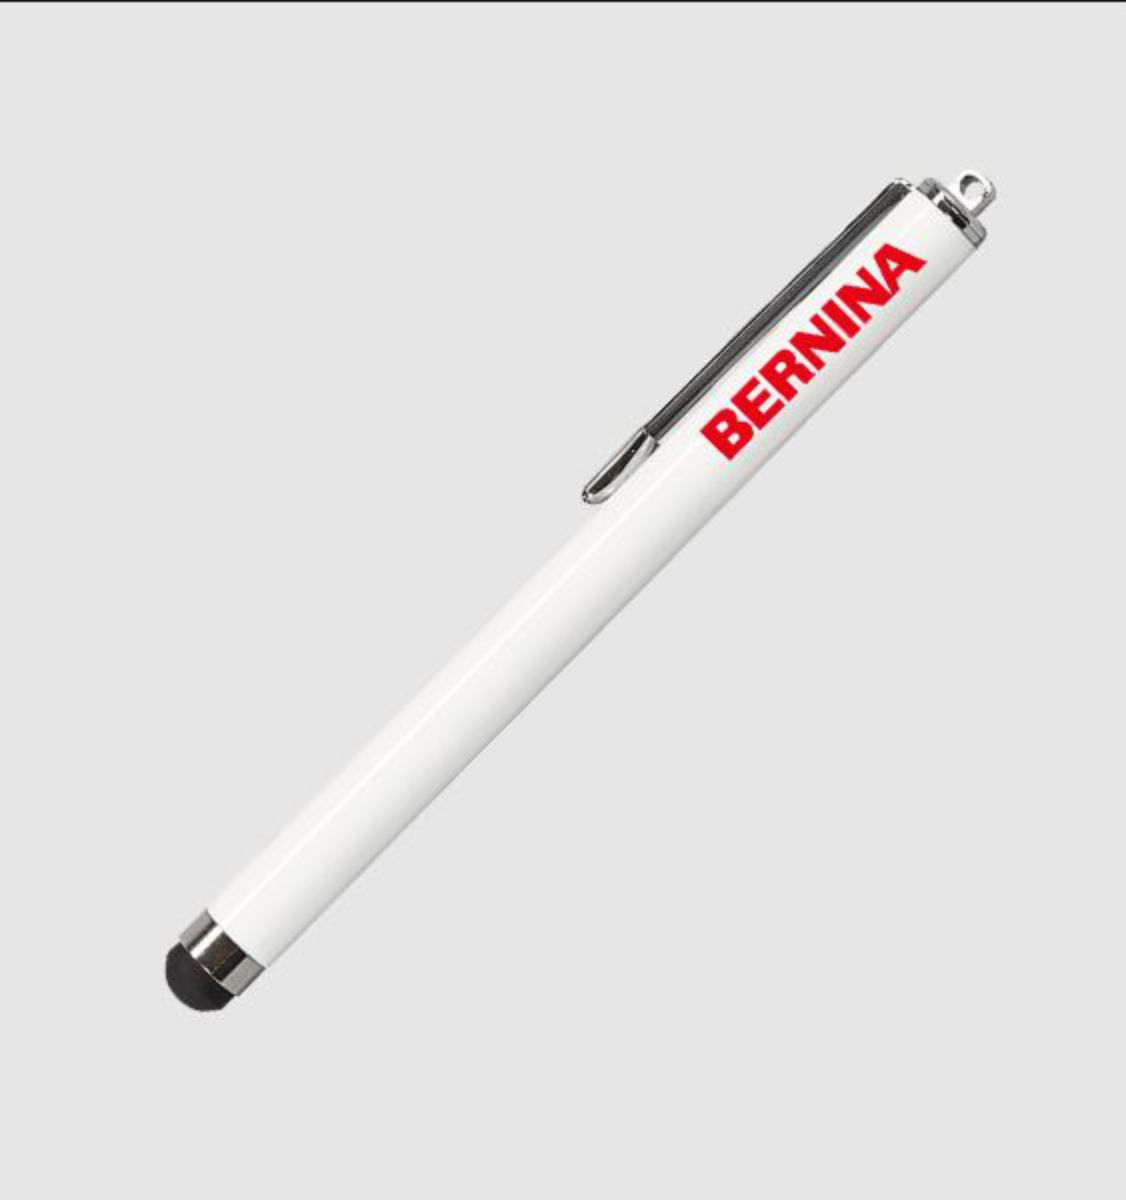 BERNINA Touchscreen Stift